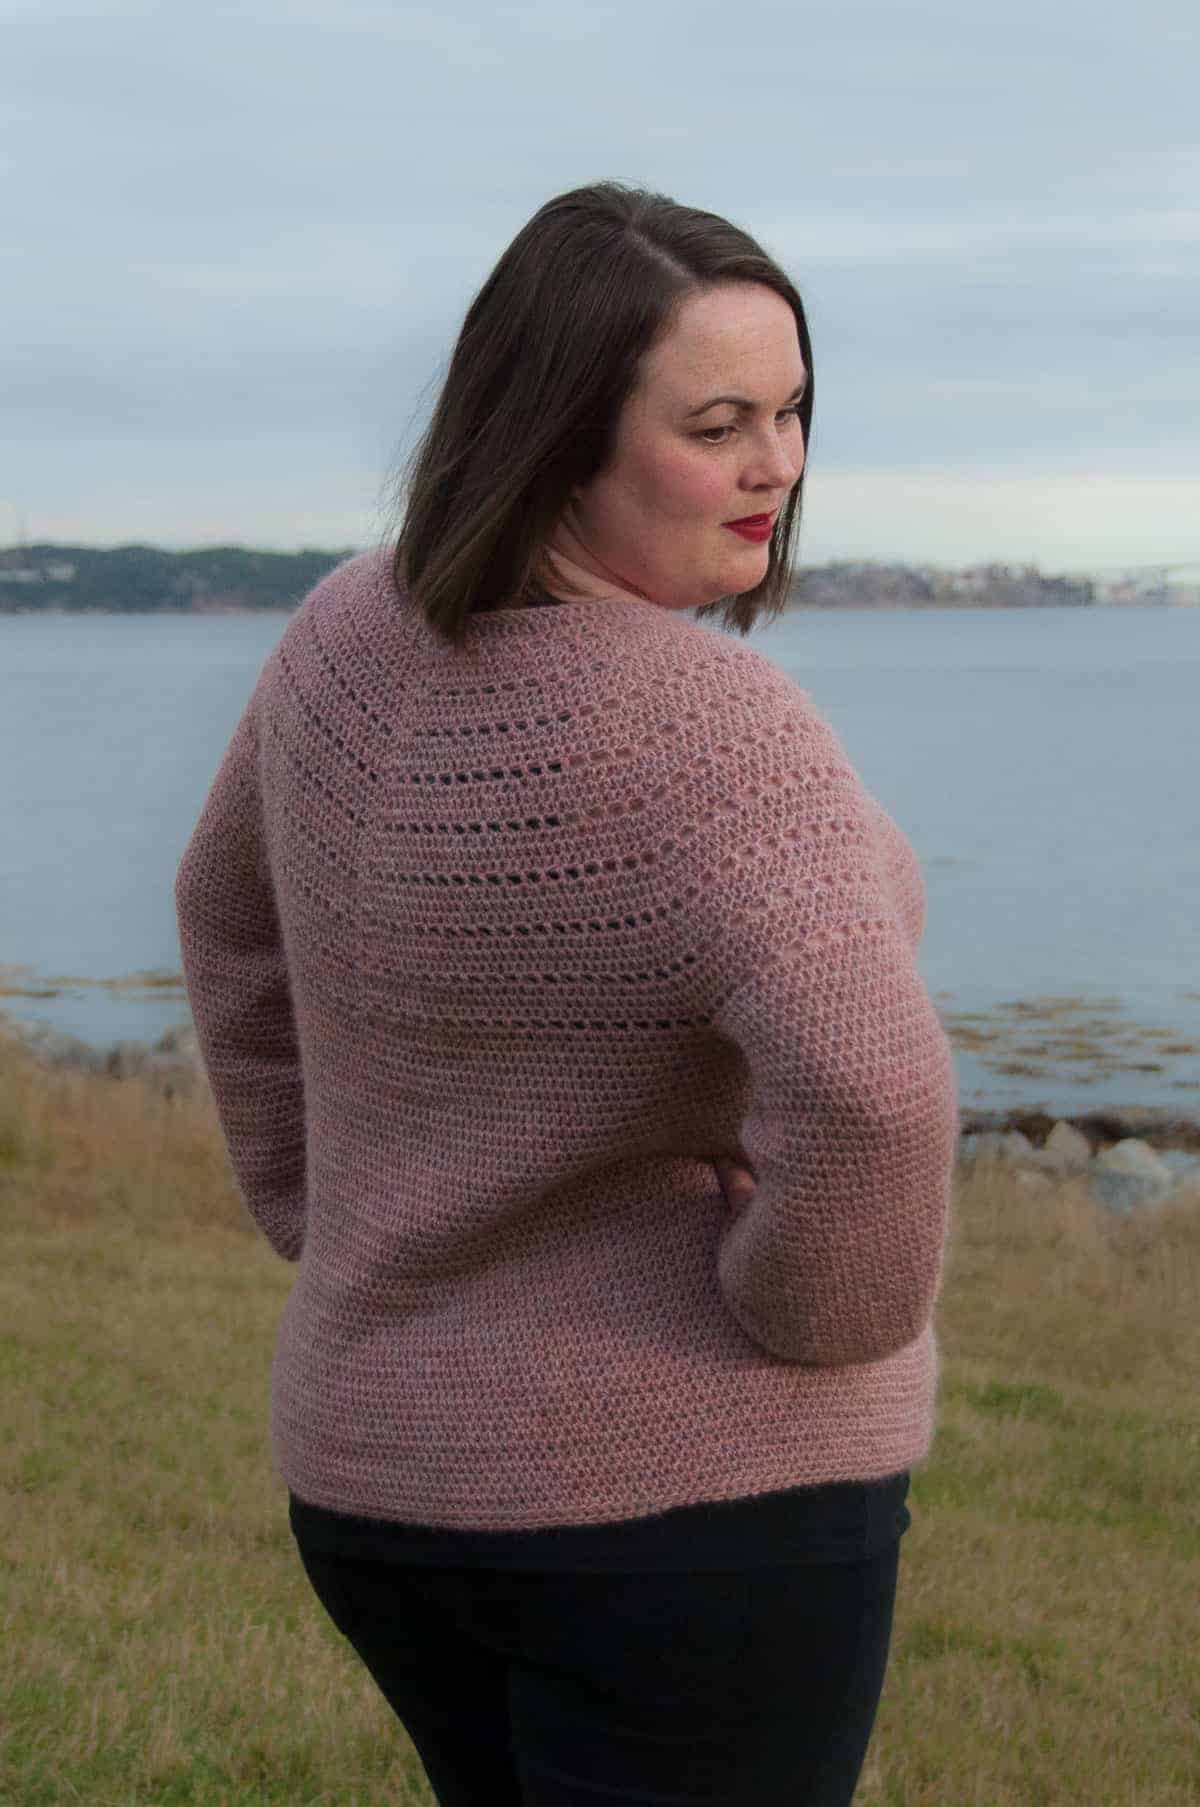 Rosea Sweater Crochet Pattern